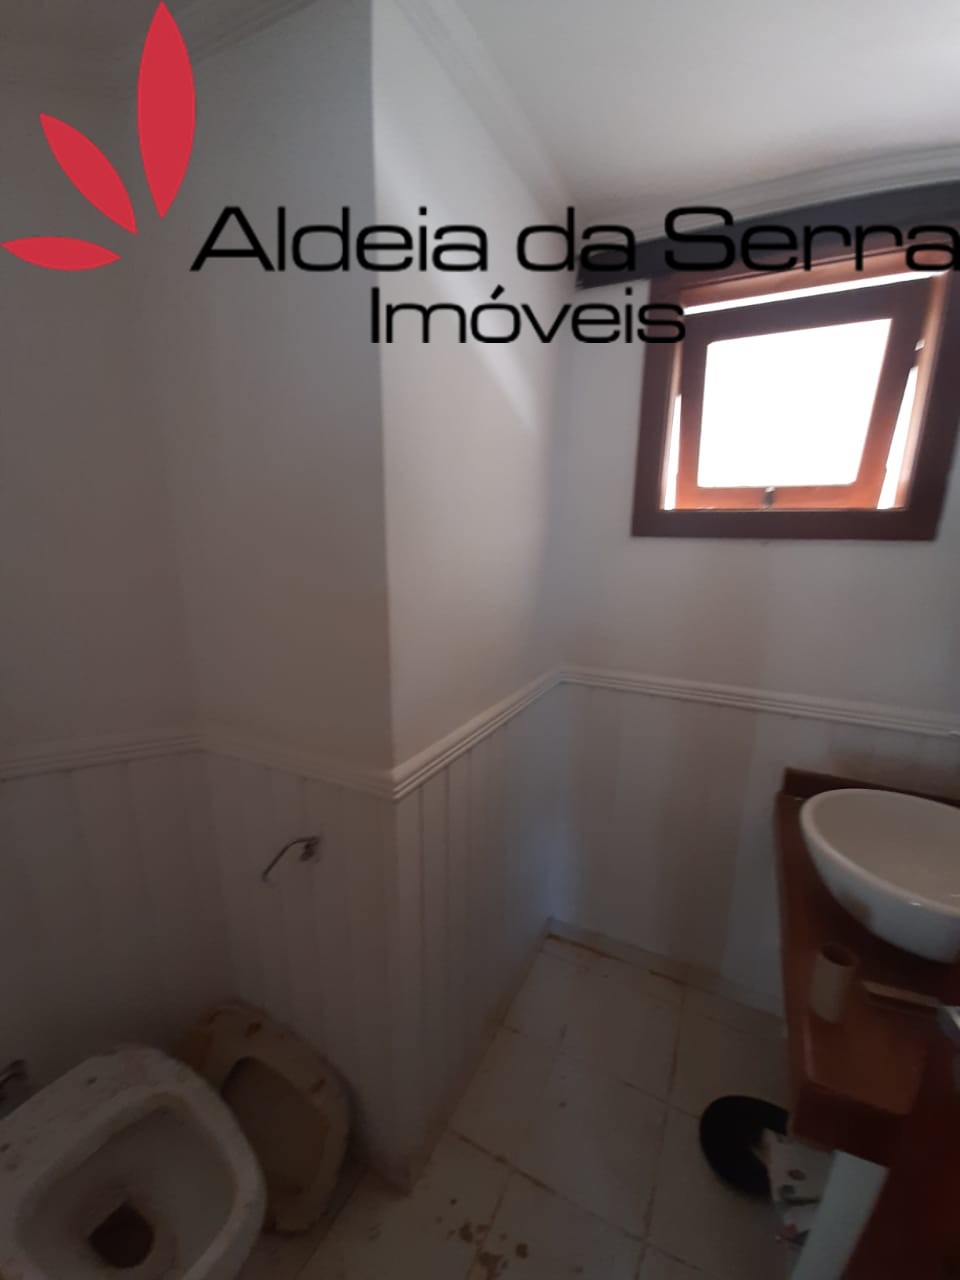 /admin/imoveis/fotos/IMG-20211111-WA0010.jpg Aldeia da Serra Imoveis